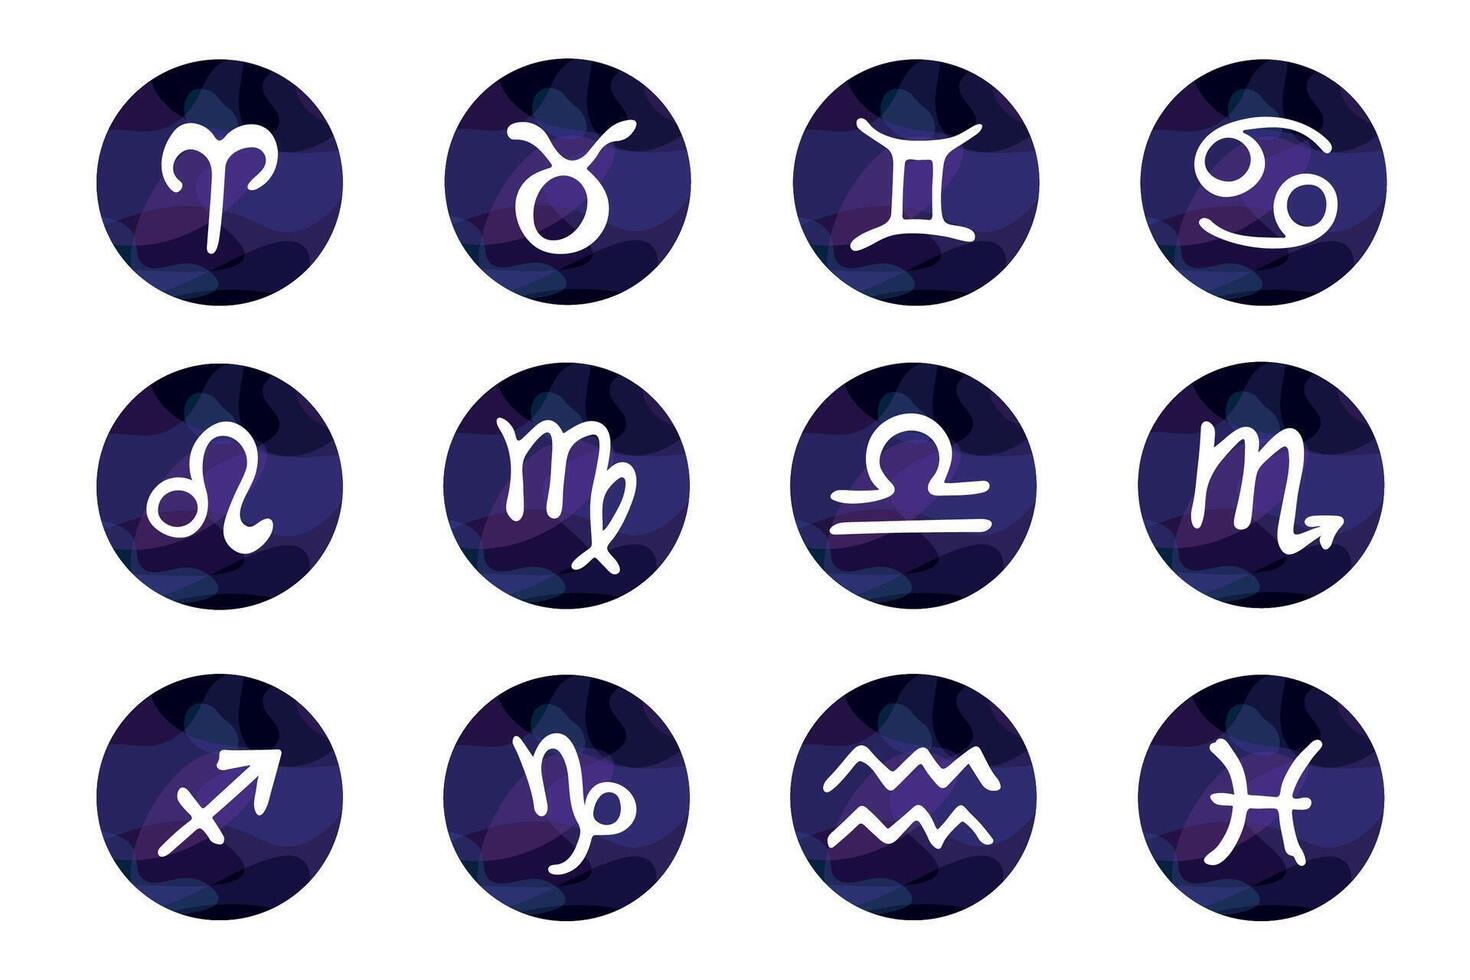 mano dibujado zodíaco señales en redondo marcos esotérico garabatear conjunto astrología clipart elementos para diseño vector